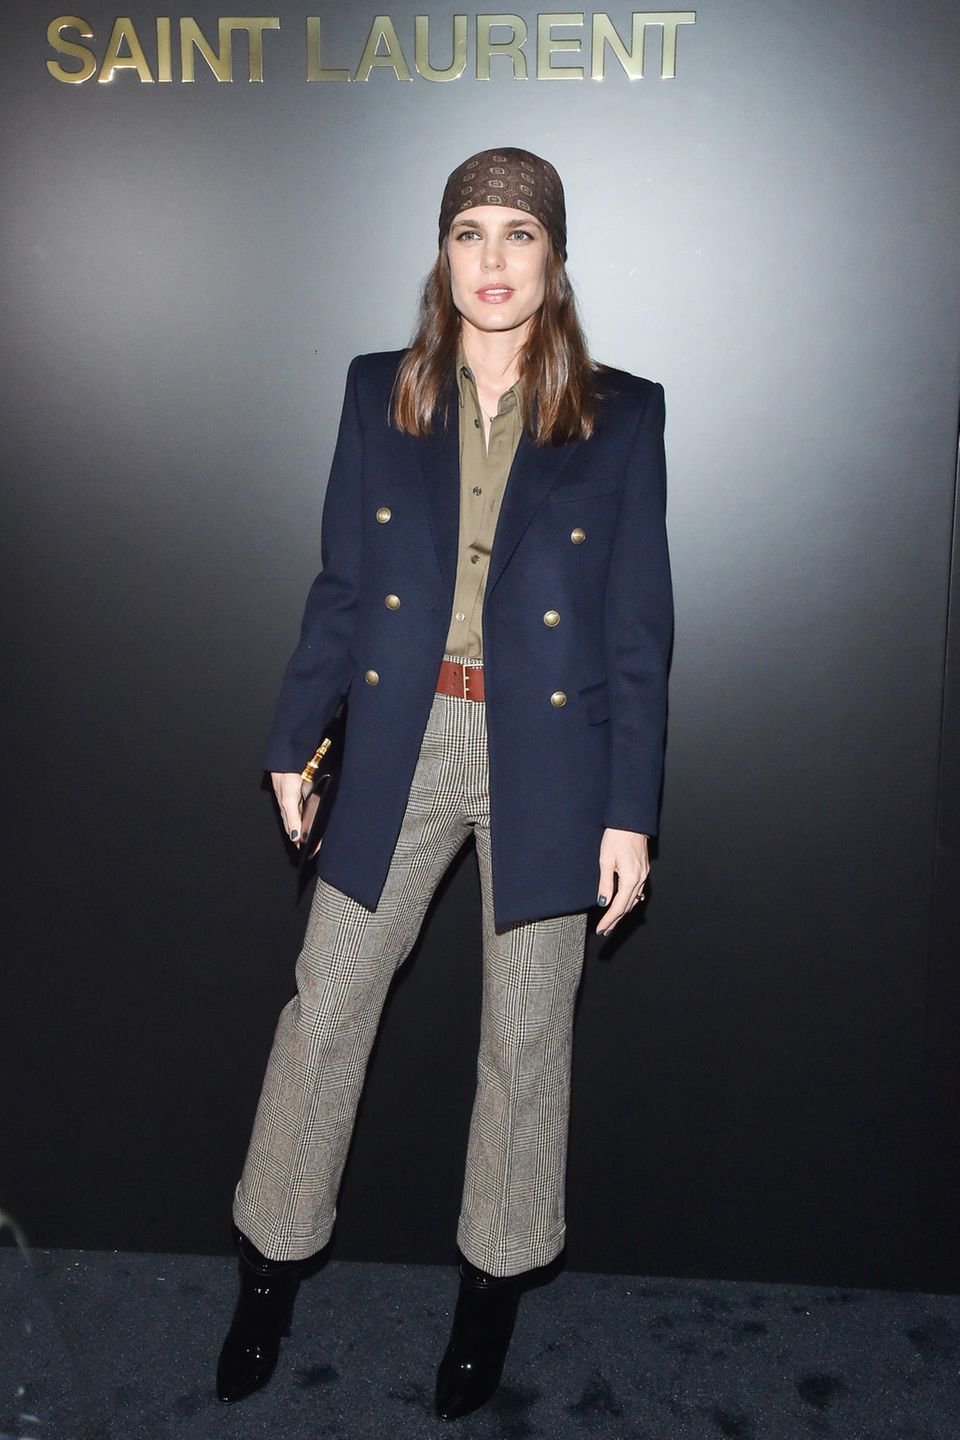 Auf den Red-Carpets dieser Welt, setzt Charlotte Casiraghi eher auf den klassischen Look. Für die Saint Laurent Fashion-Show in Paris wählt sie jedoch zum blauen Longblazer und zur karierten Culotte ein Accessoire, welches sie in Windeseile zum Trendsetter verwandelt. 